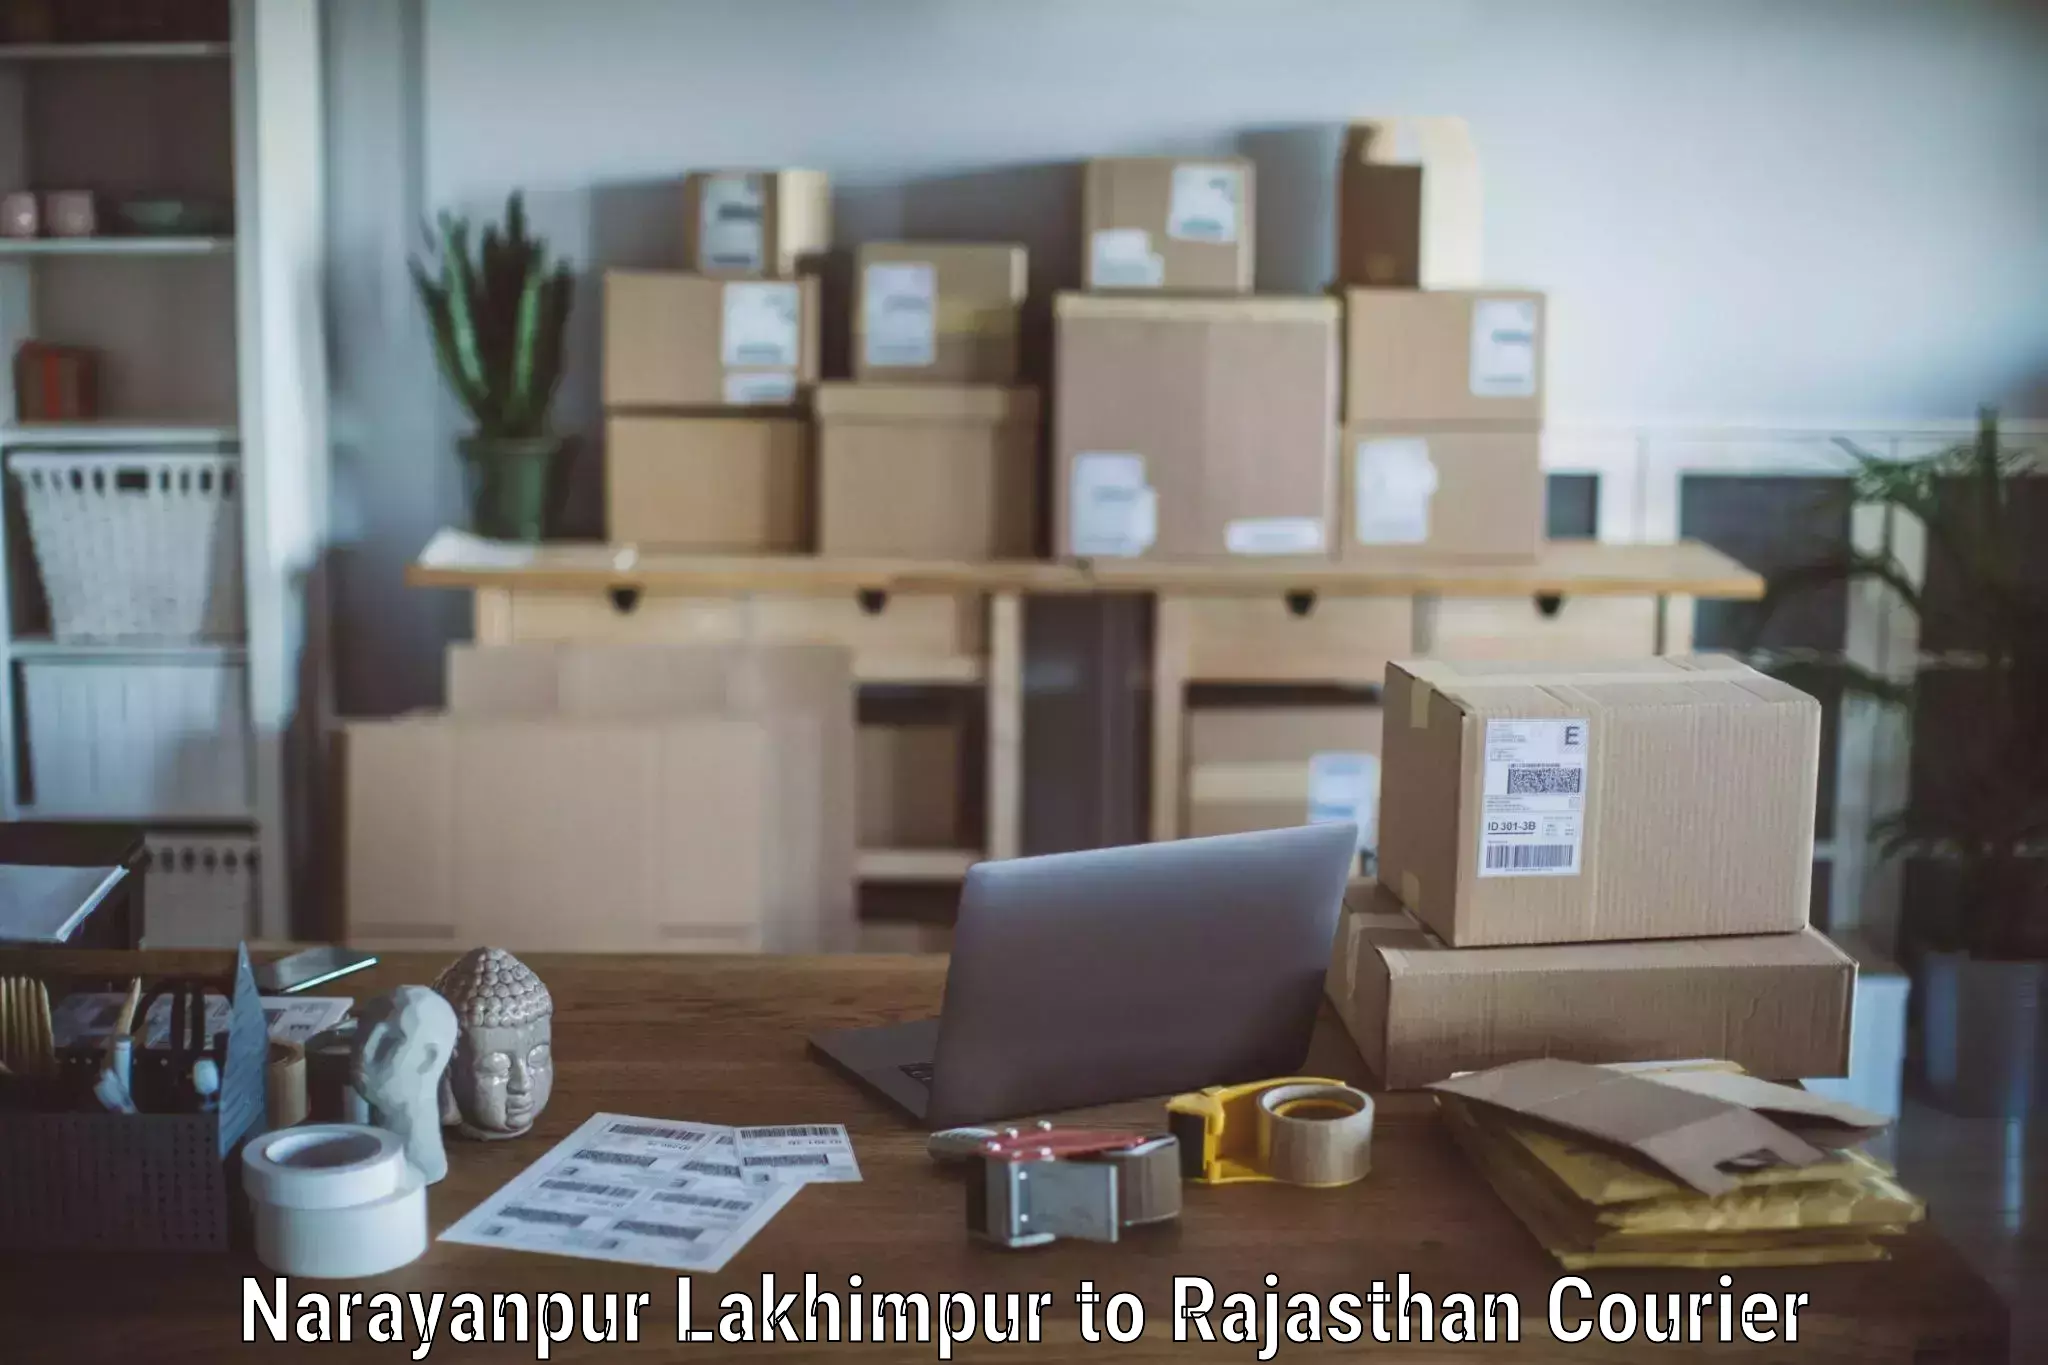 Furniture moving experts Narayanpur Lakhimpur to Banar